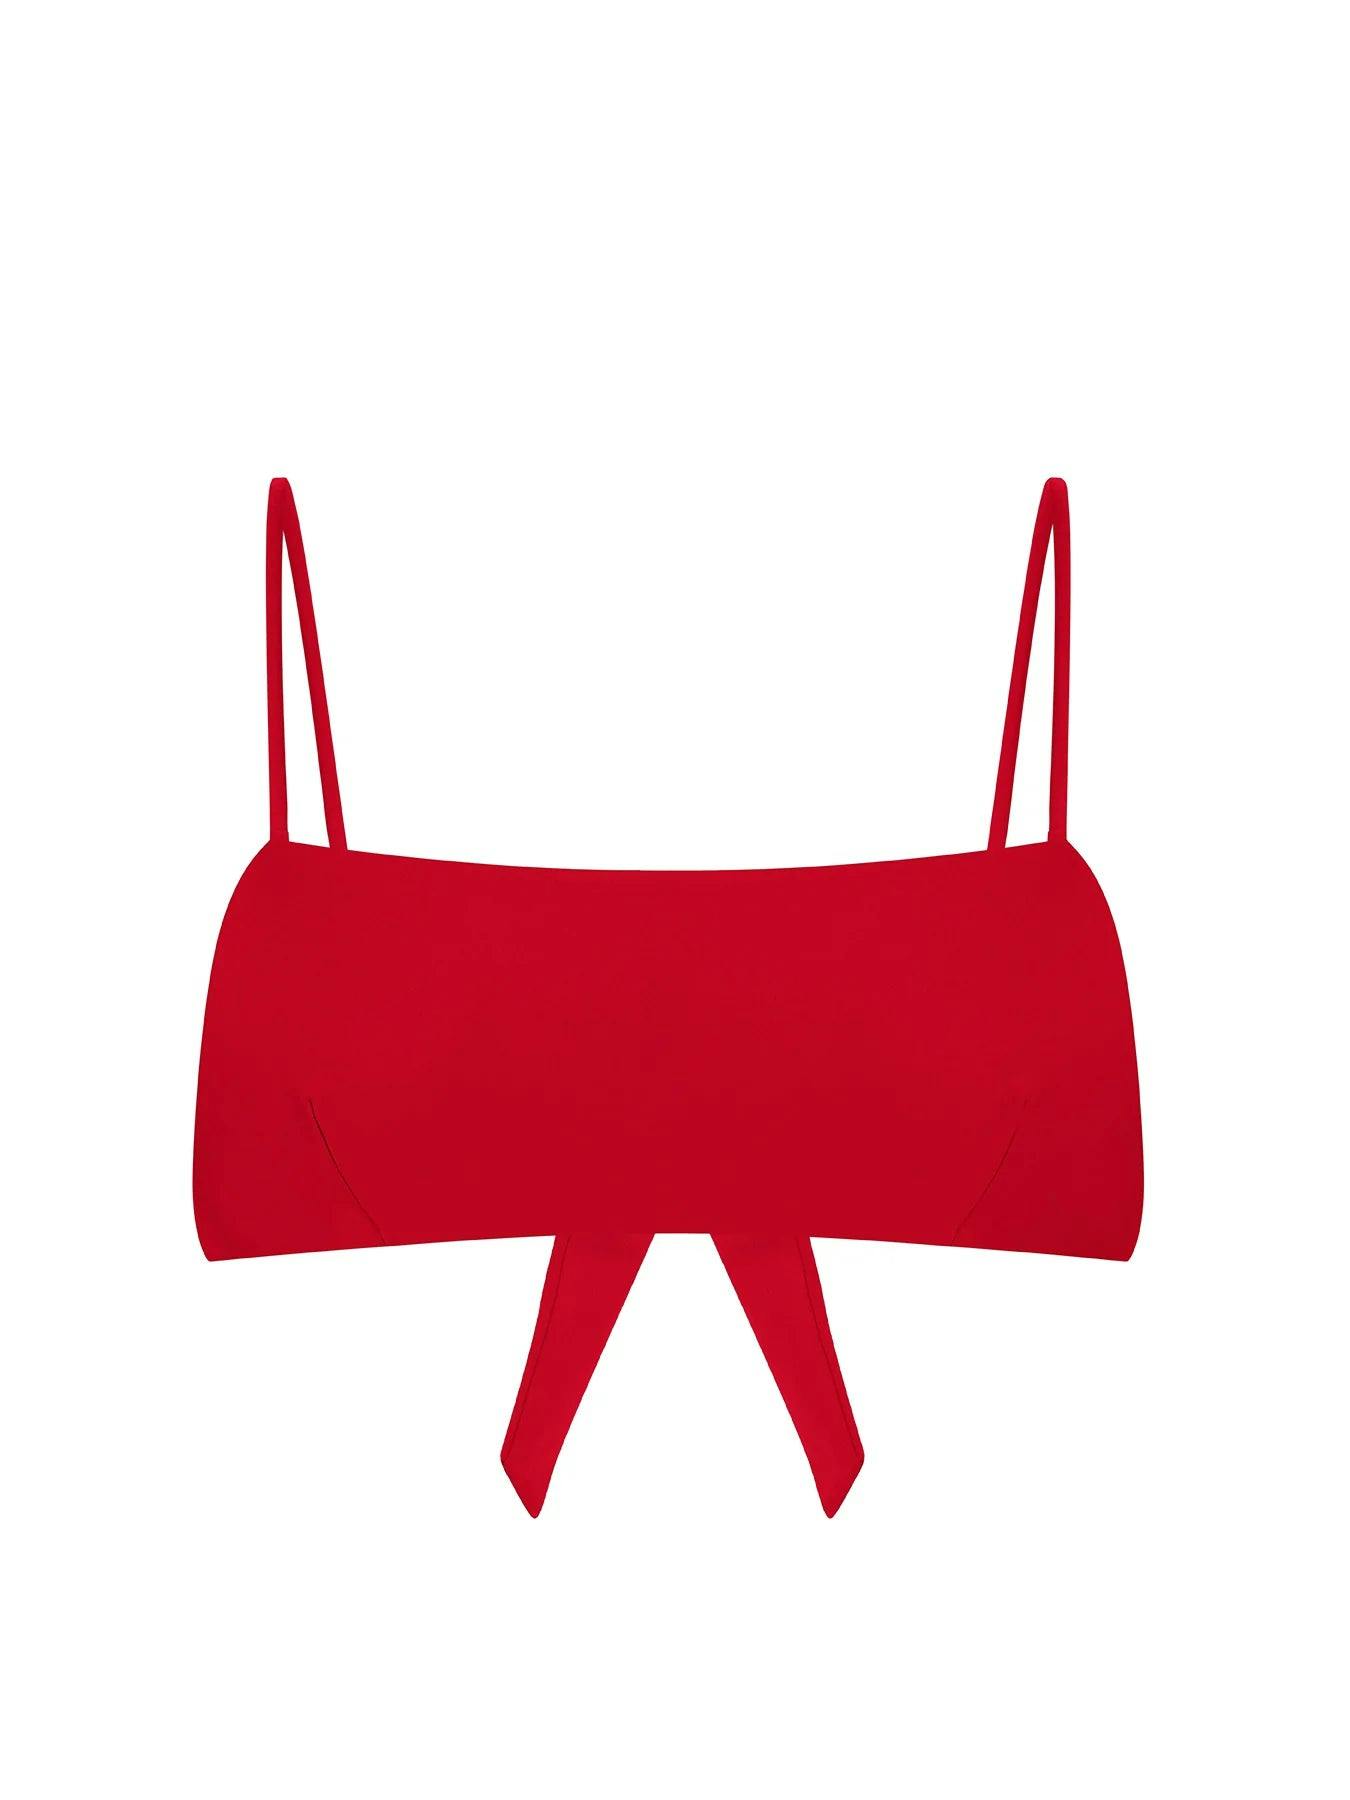 Ana red bikini top